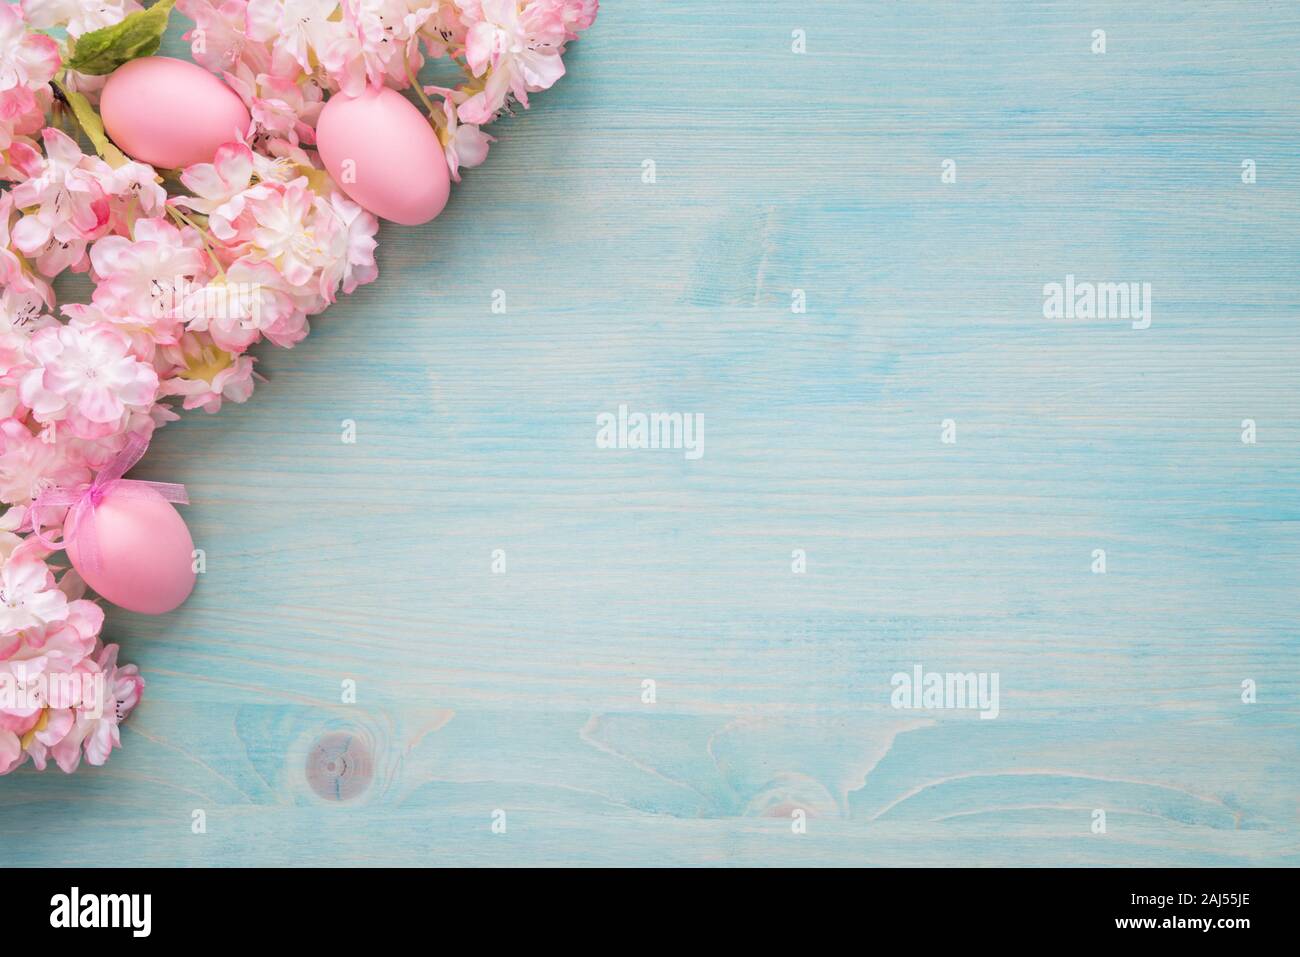 Pâques Printemps De fond peint en bleu avec la branche du conseil flowering cherry couverte de fleurs roses et oeufs rose comme une frontière Banque D'Images